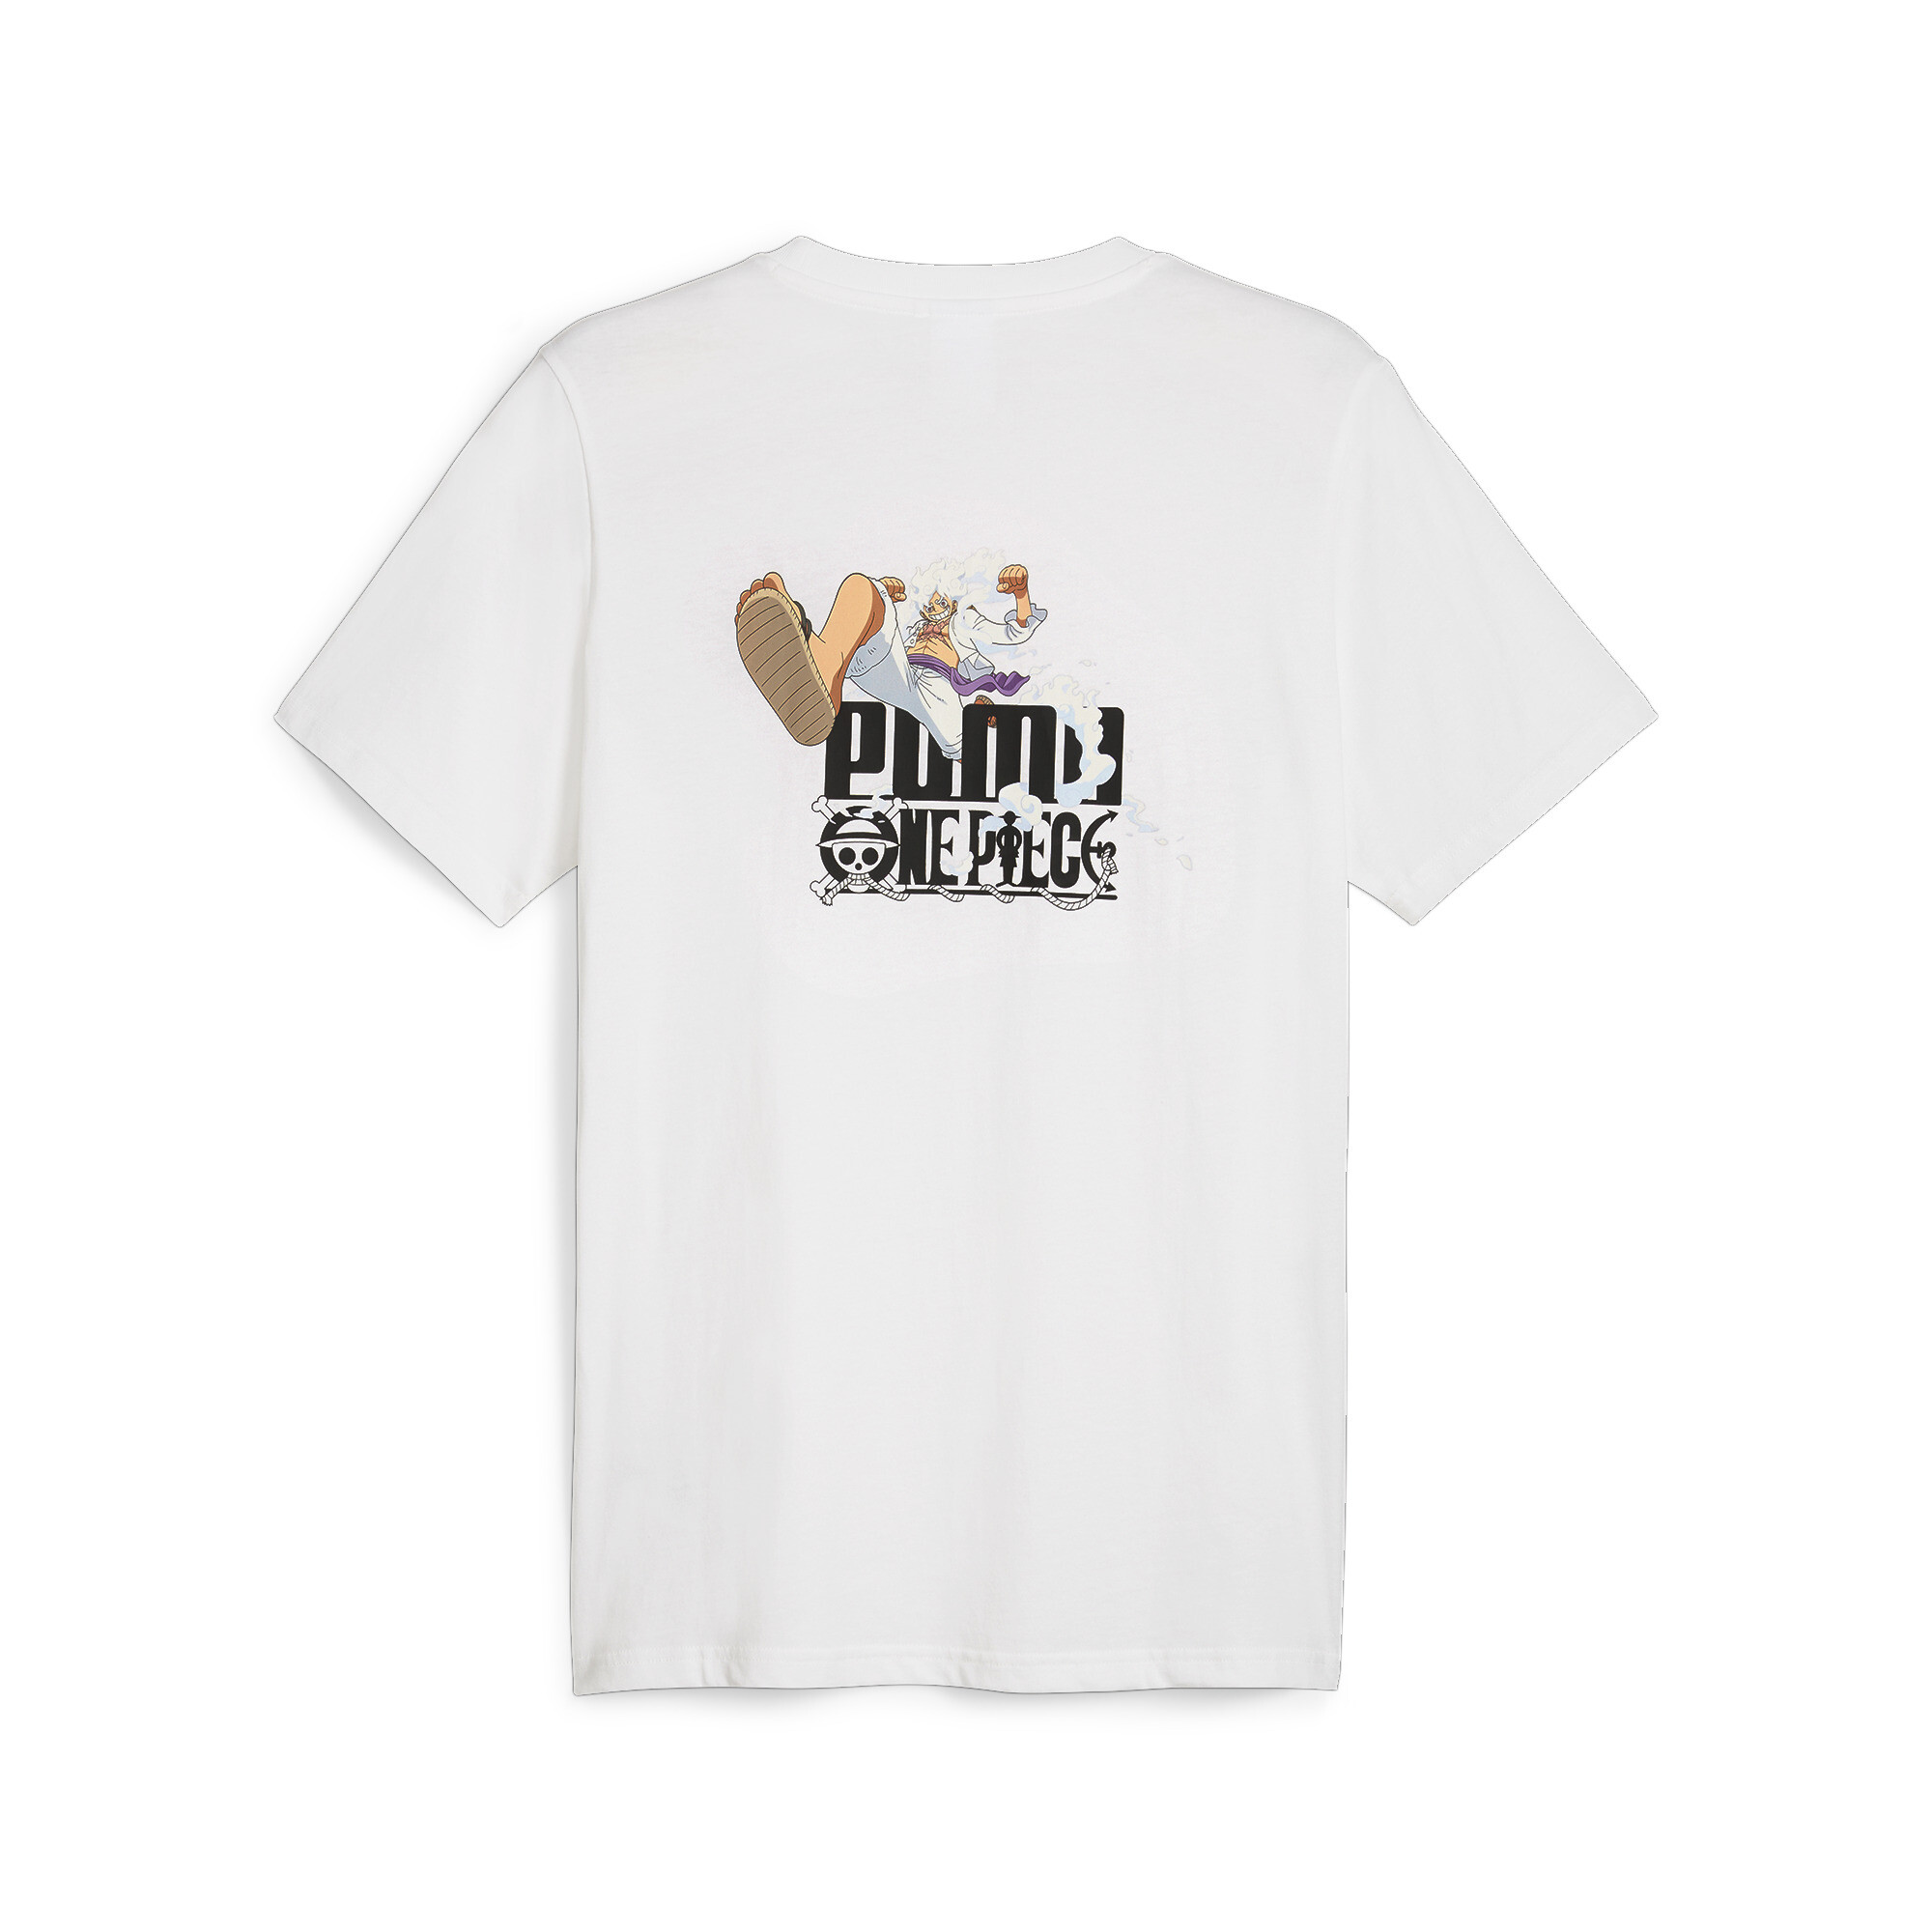 プーマ メンズ PUMA x ワンピース グラフィック 半袖 Tシャツ PUMA PUMA X ONE PIECE GRAPHIC TEE